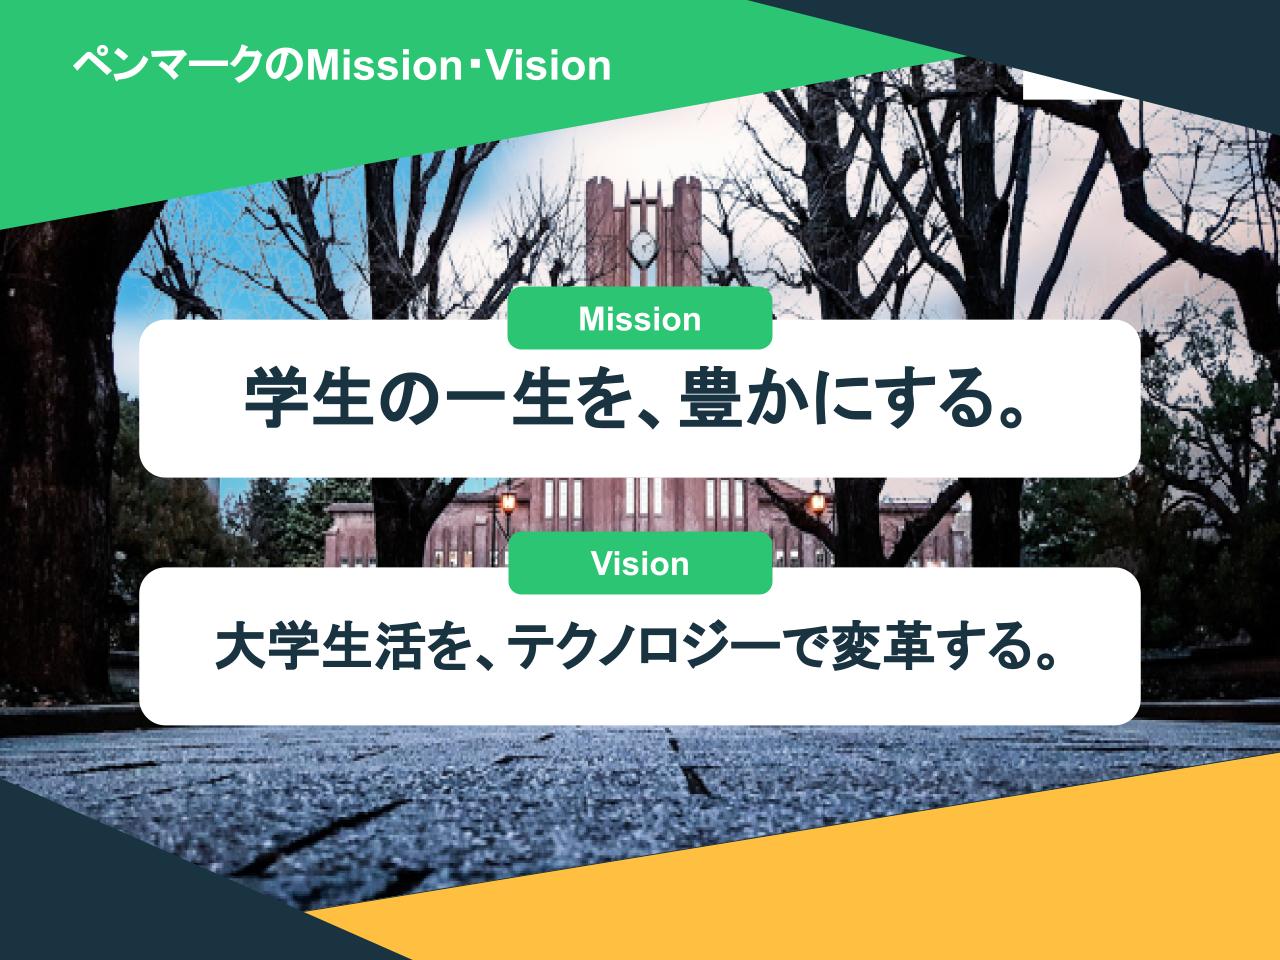 ペンマークの『Mission：実現したい姿』と『Vision：実現するための手段』